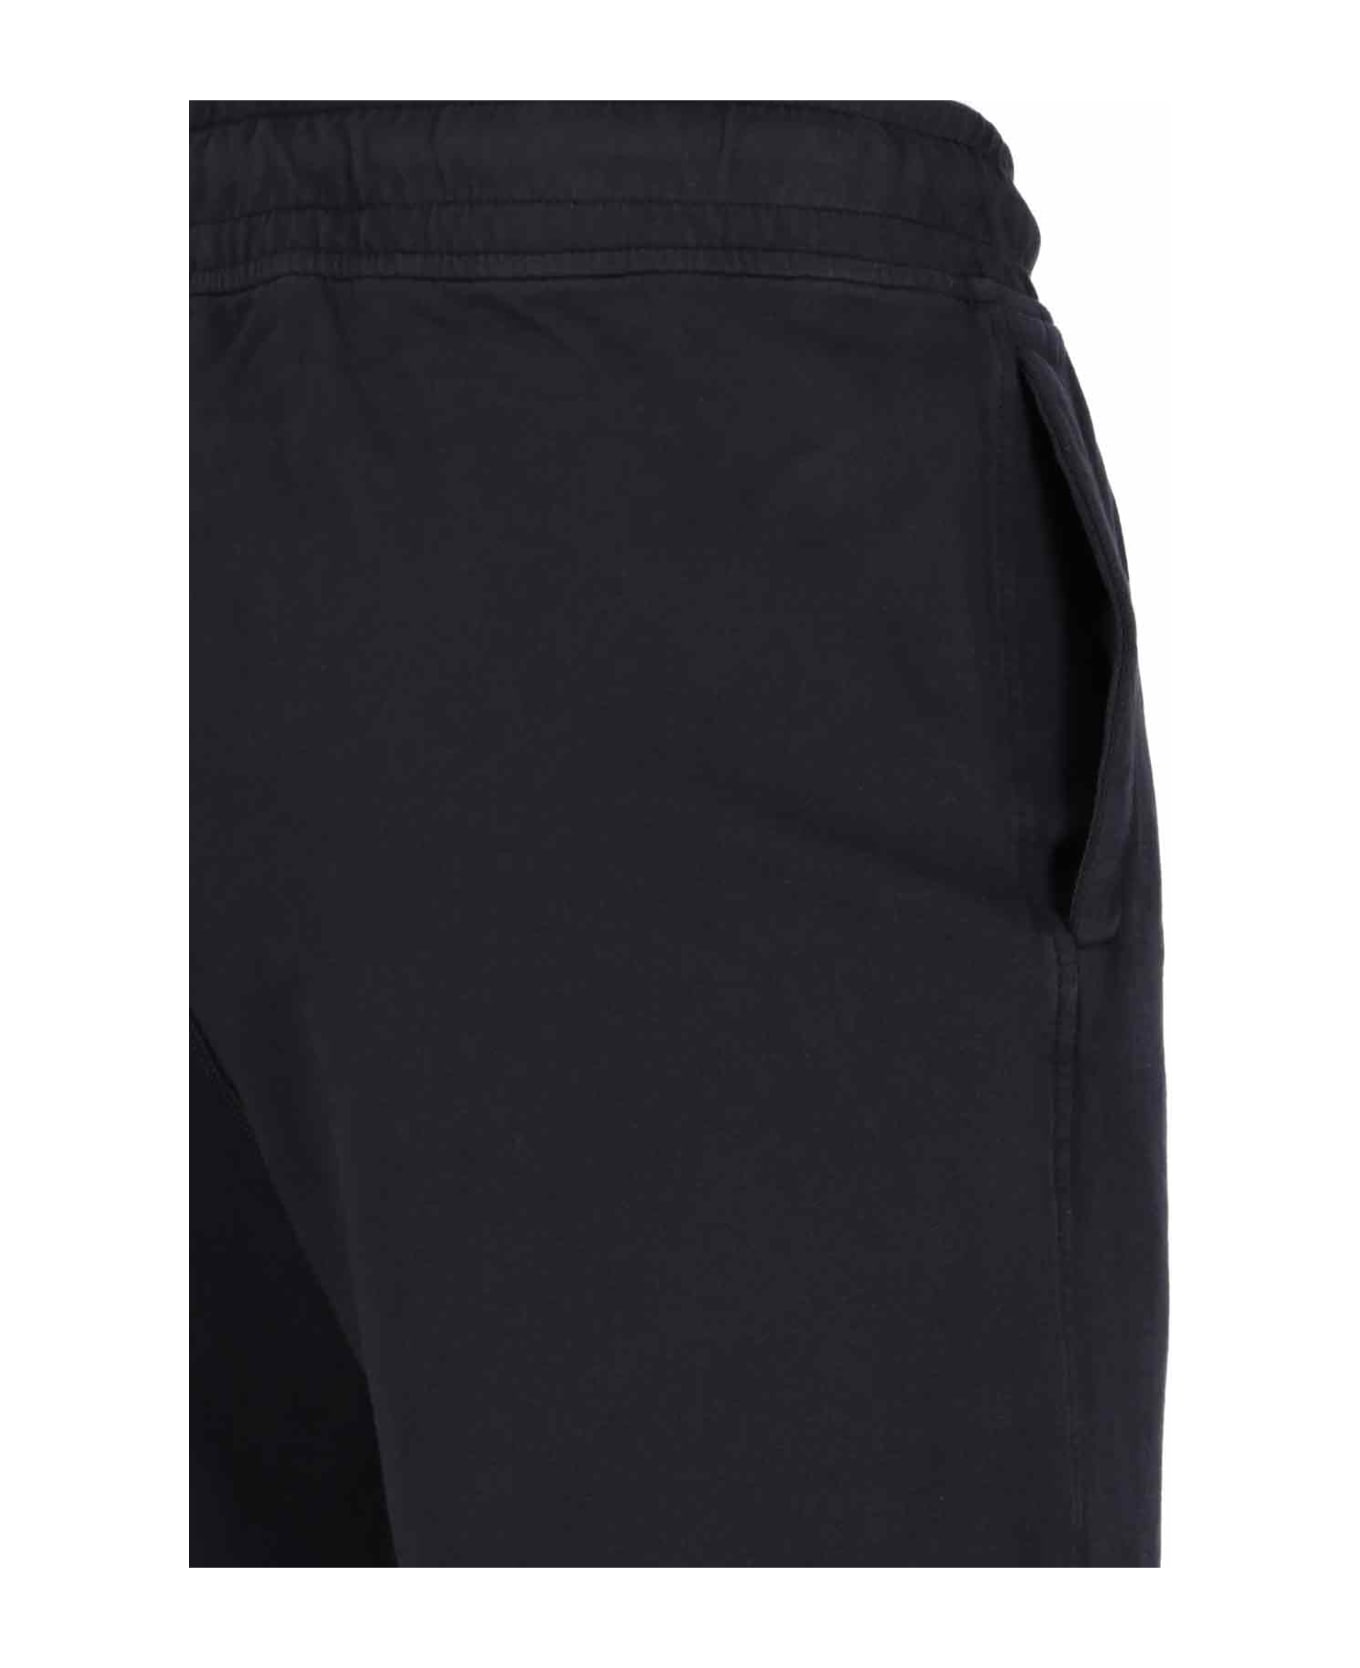 C.P. Company Logo Jogger Shorts - Black ショートパンツ